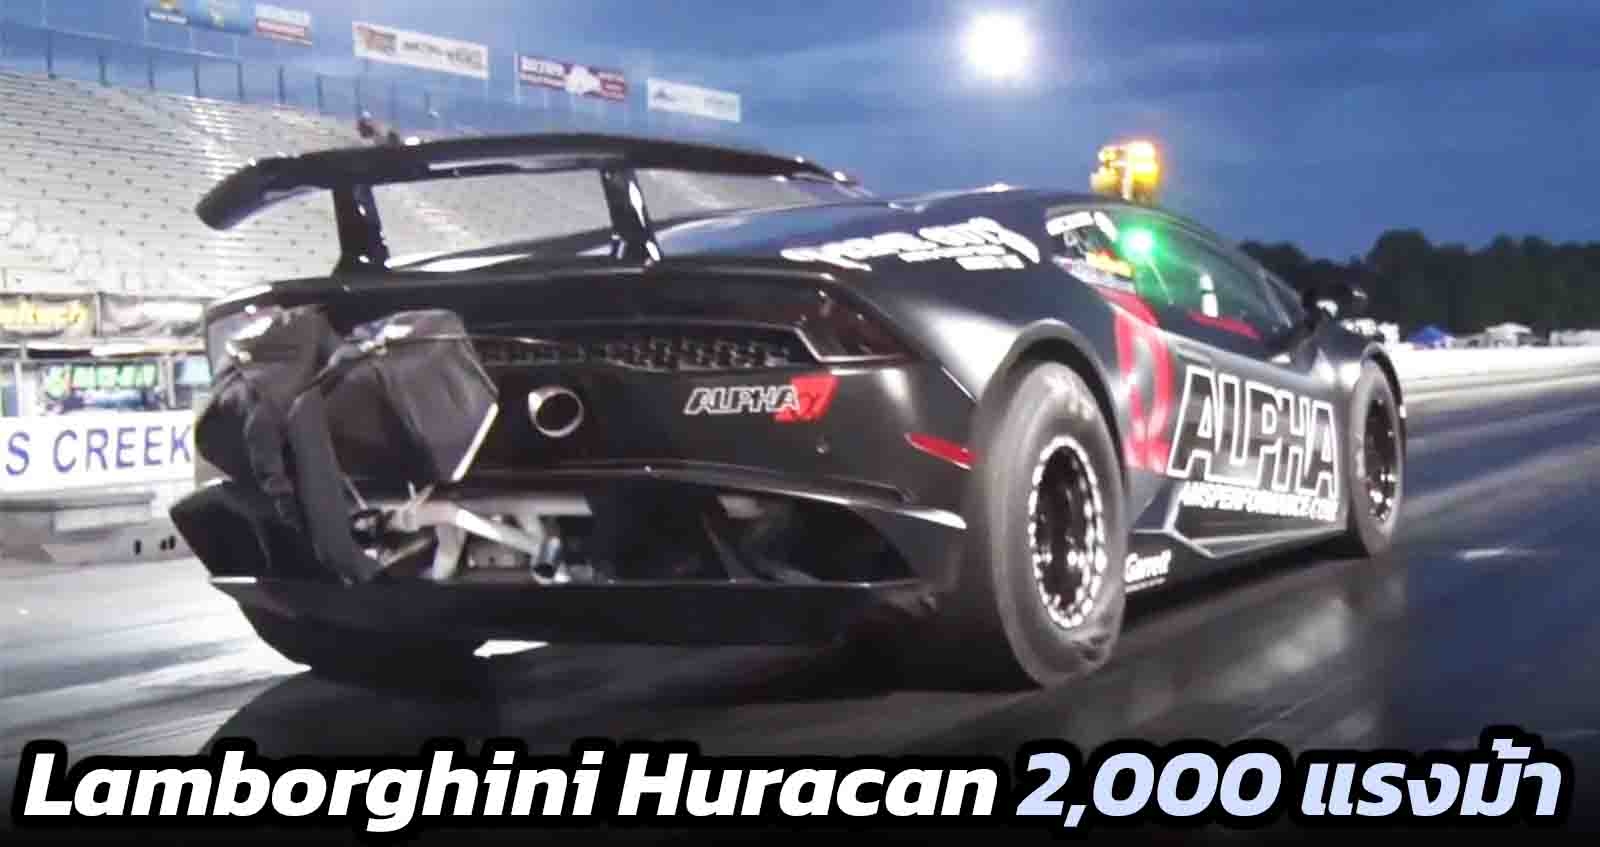 Lamborghini Huracan แรงที่สุดในโลก 2,000 แรงม้า เร่ง 313 กม./ชม. ภายใน 7.33 วินาที (VDO)